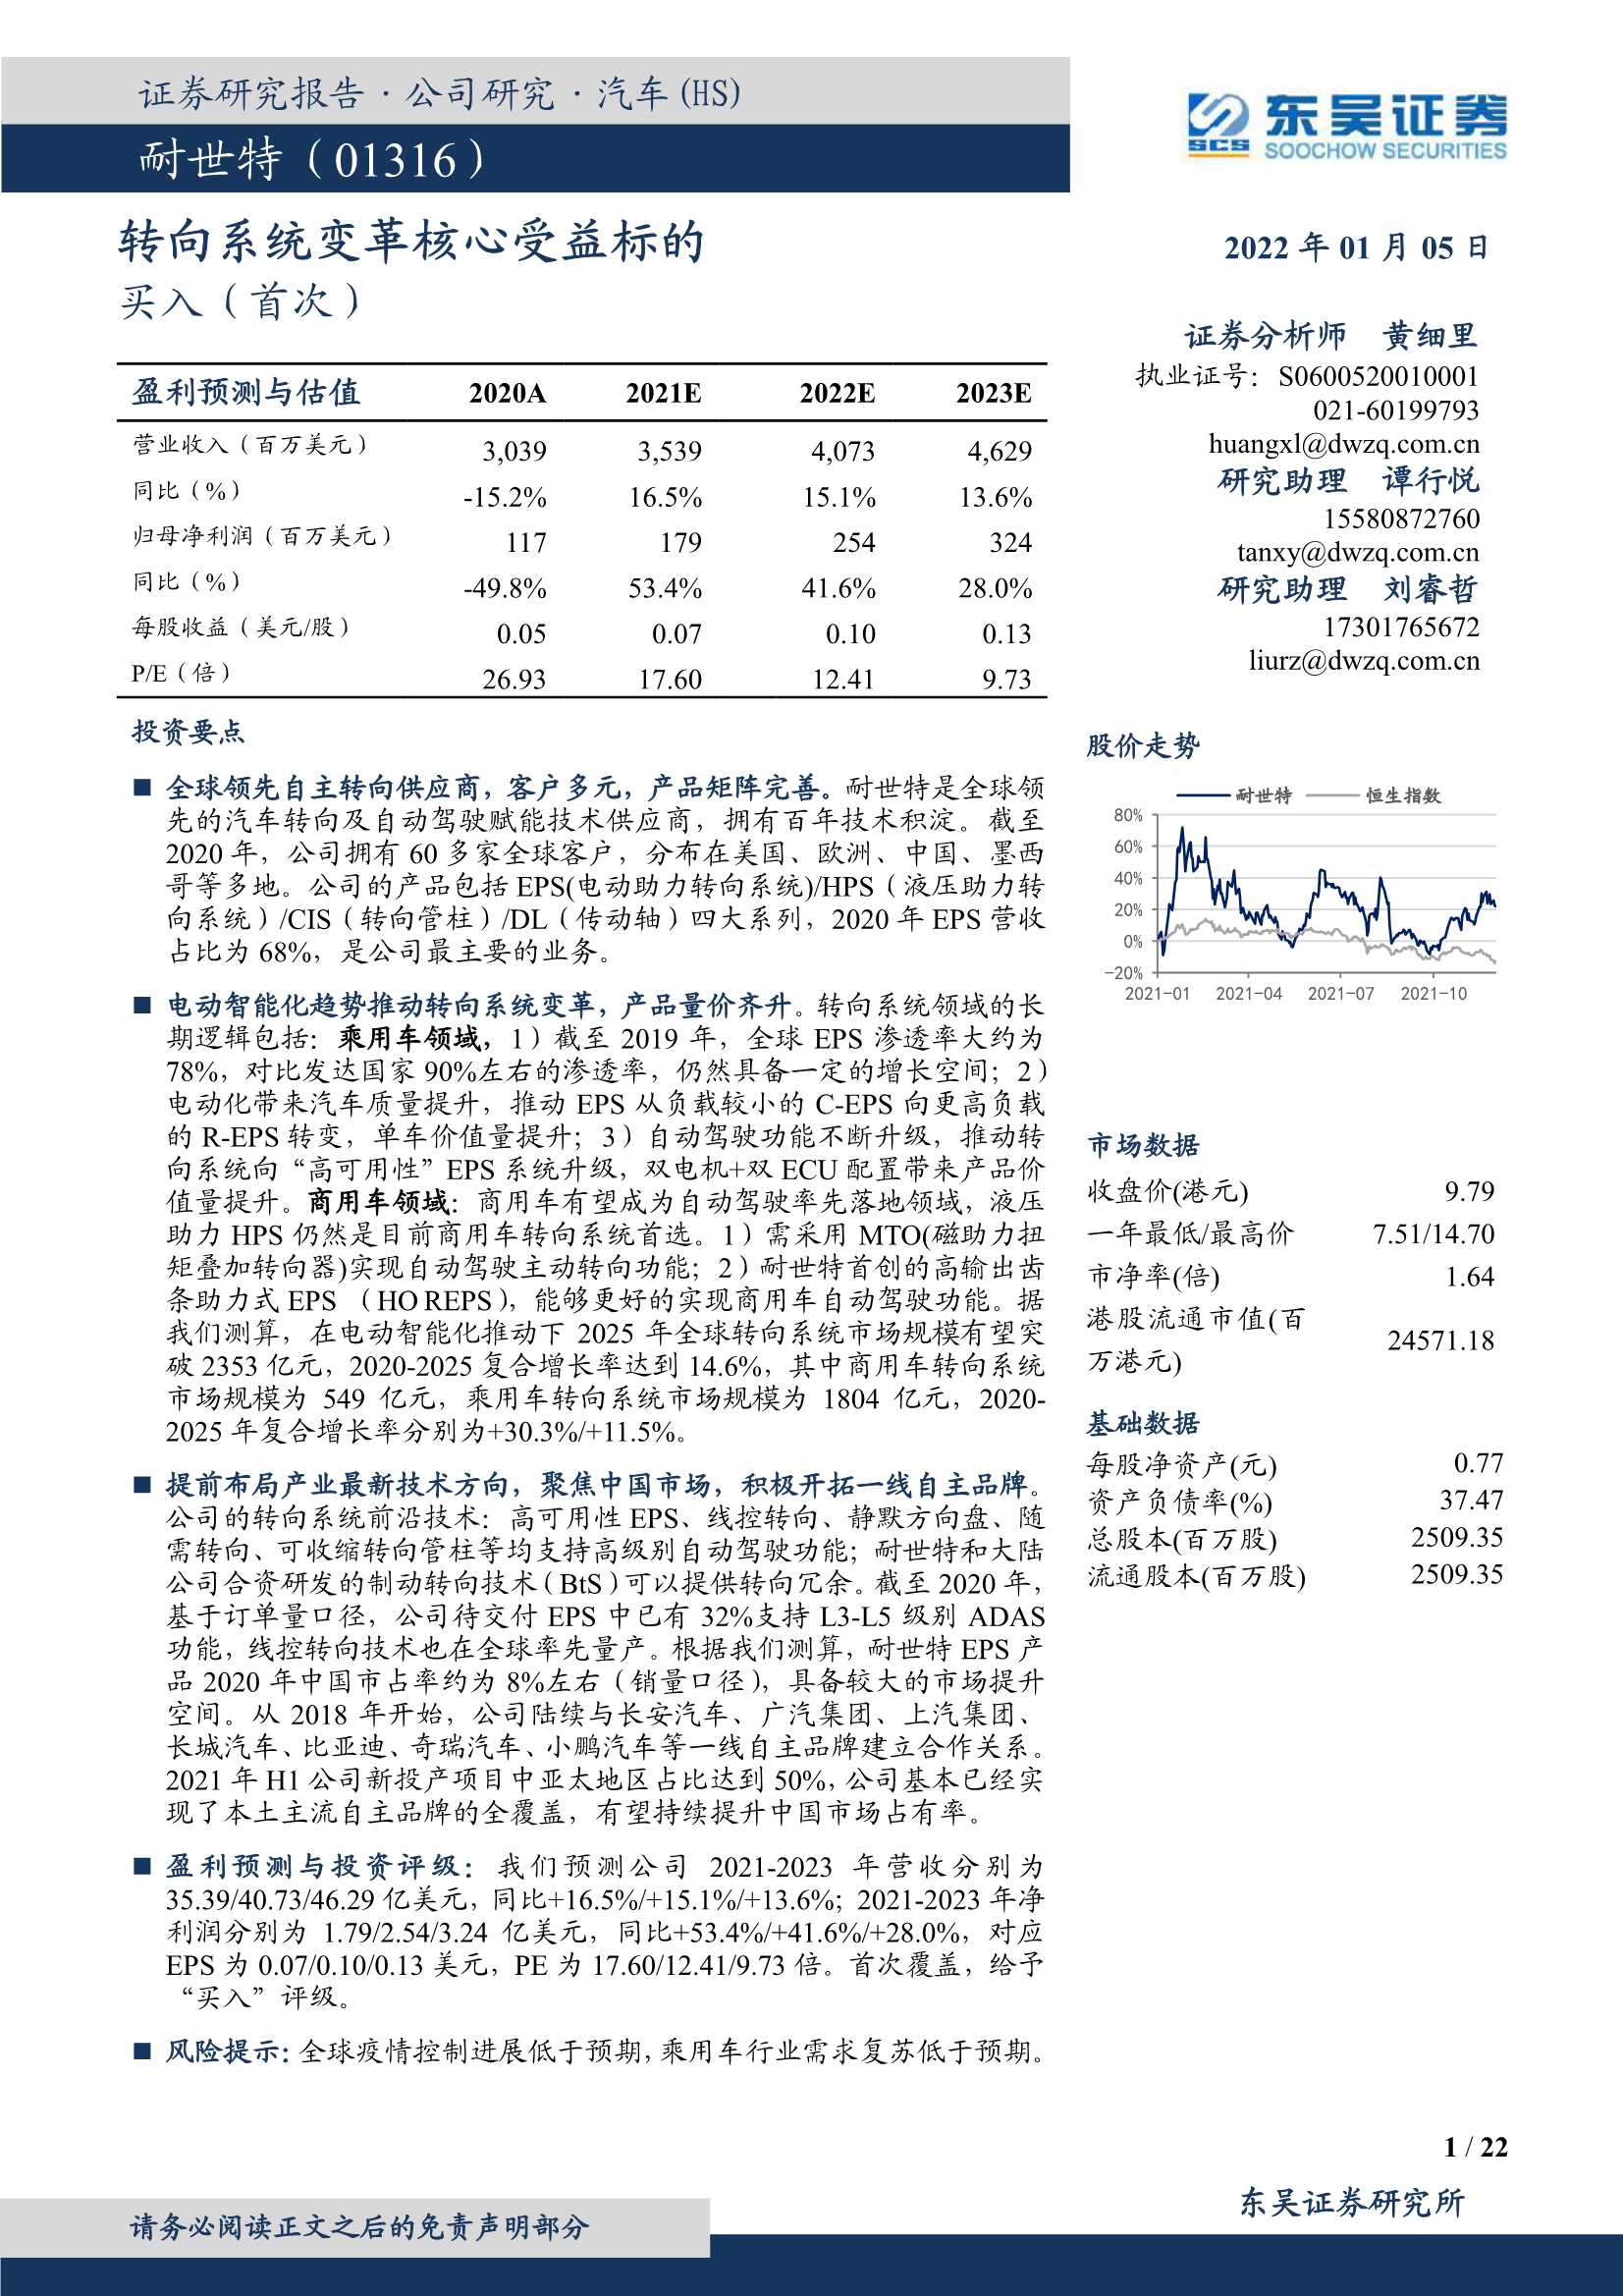 东吴证券-耐世特-1316.HK-转向系统变革核心受益标的-20220105-22页